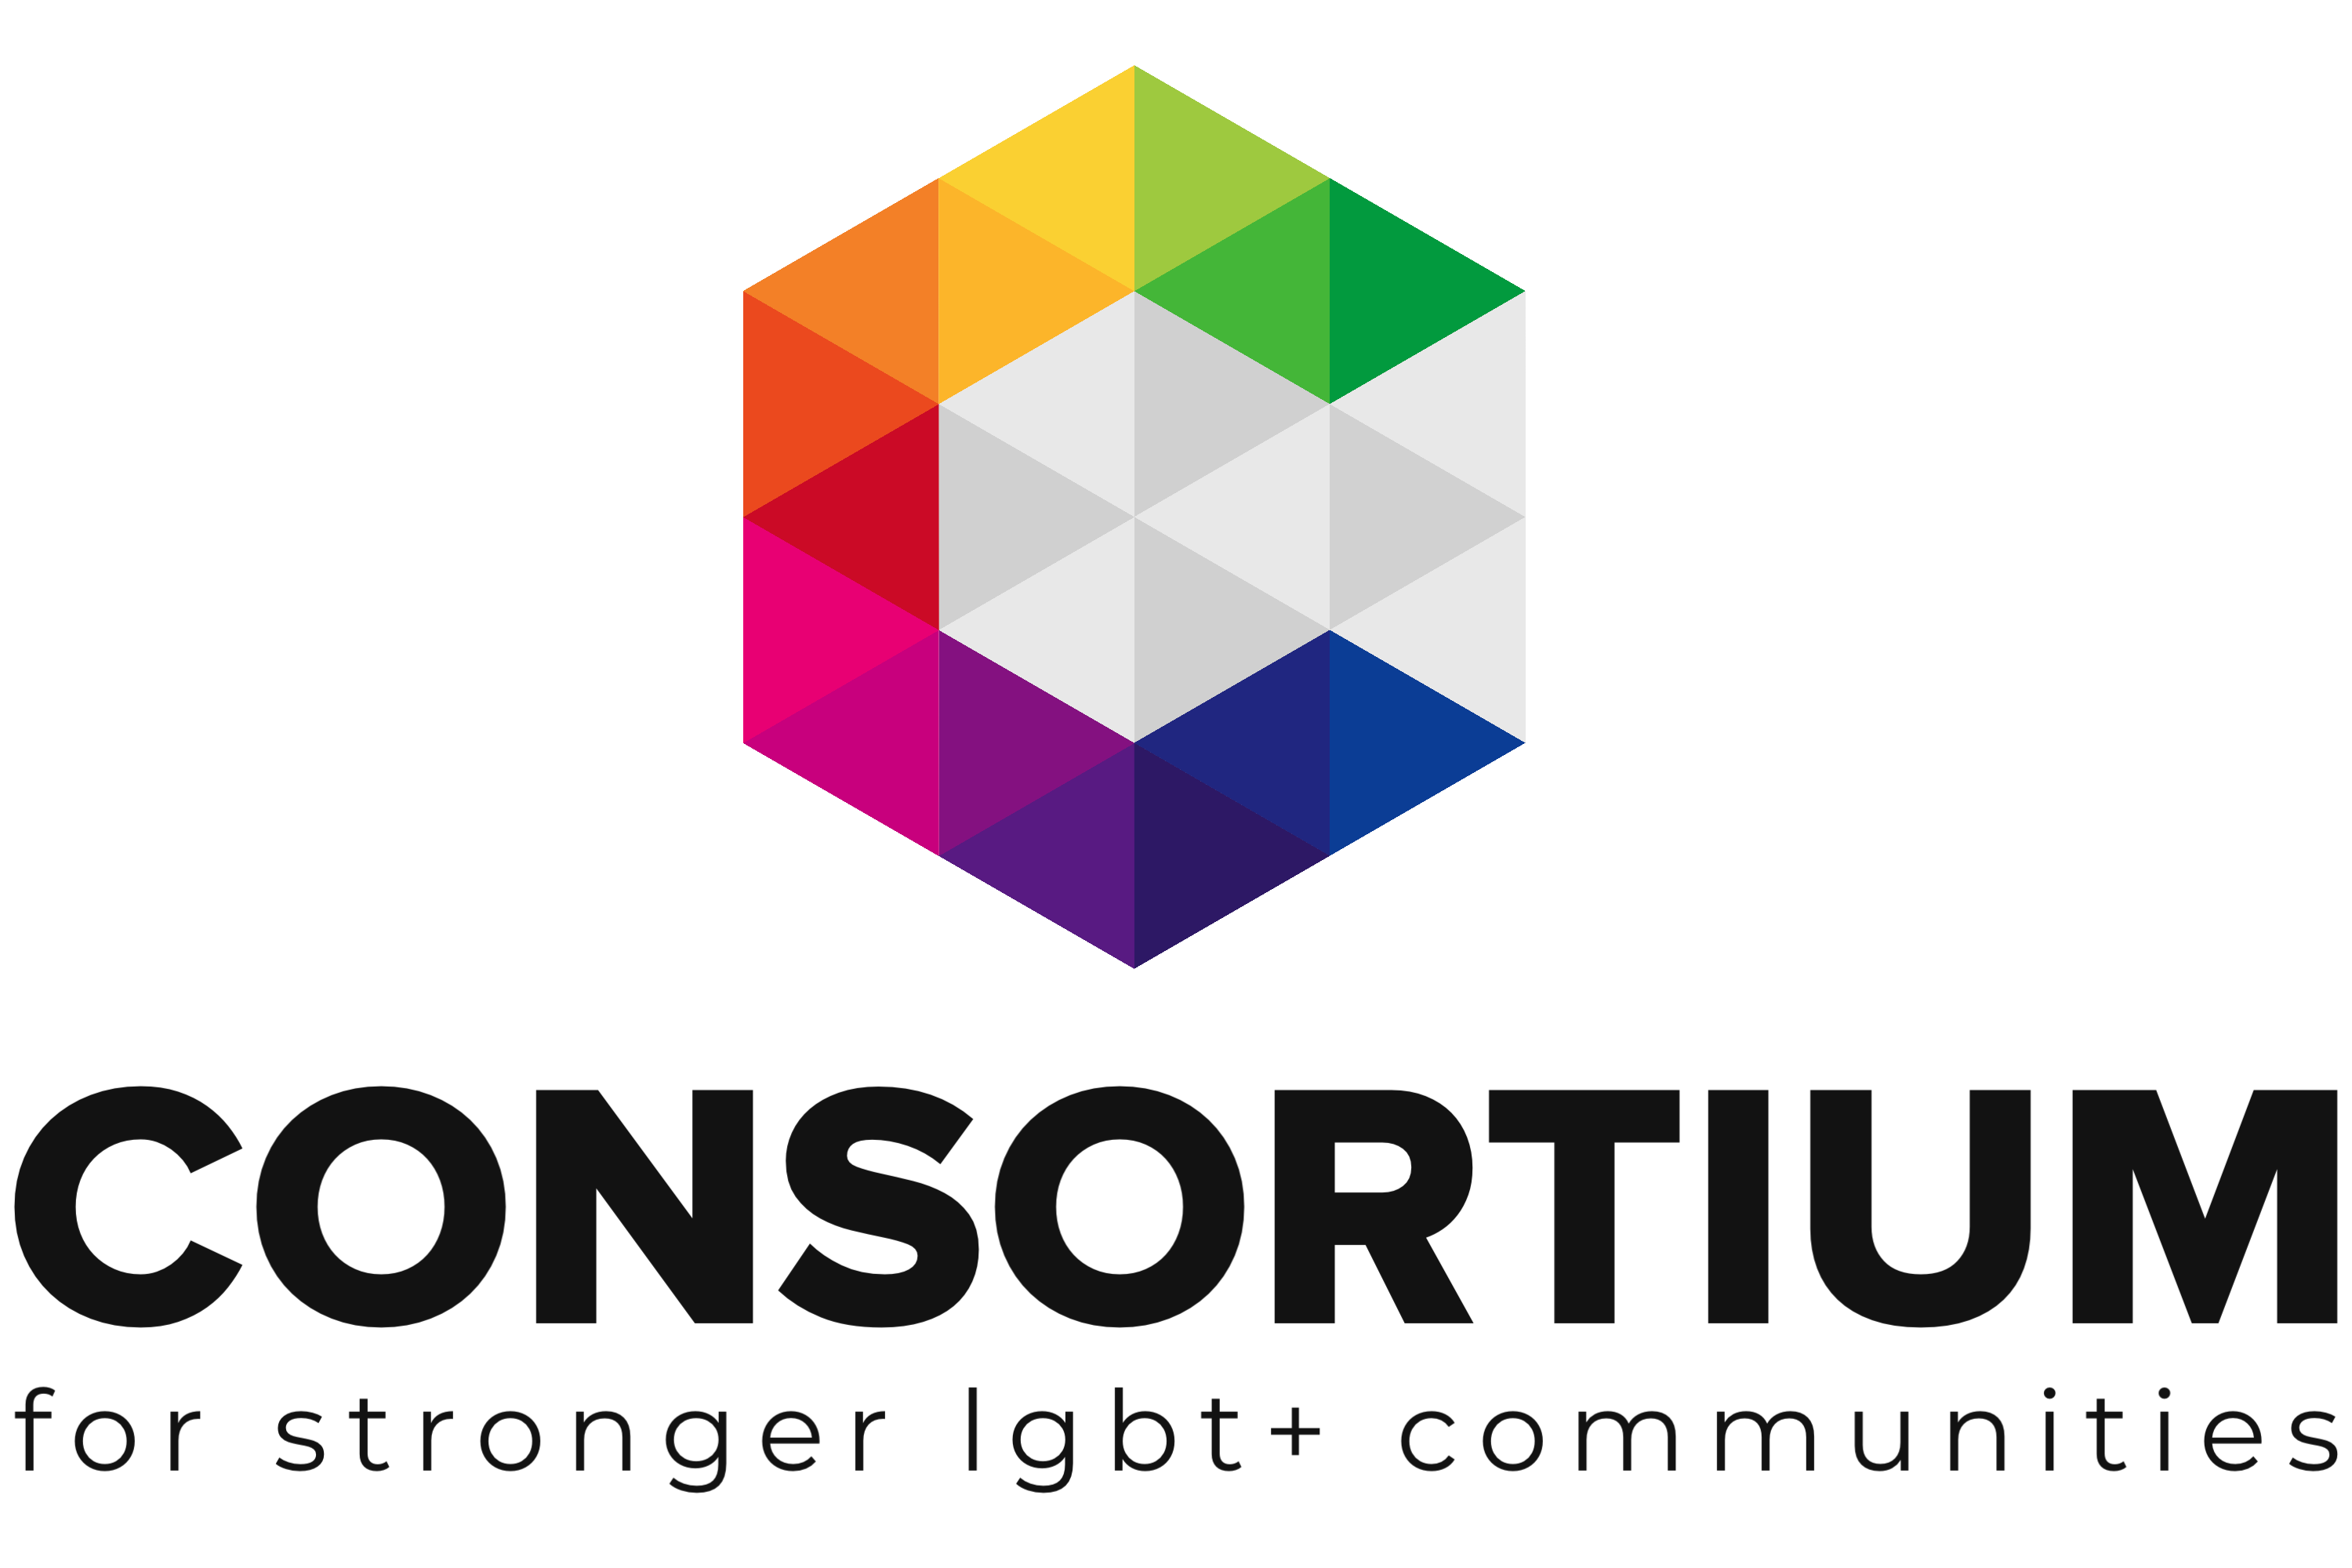 LGBT Consortium